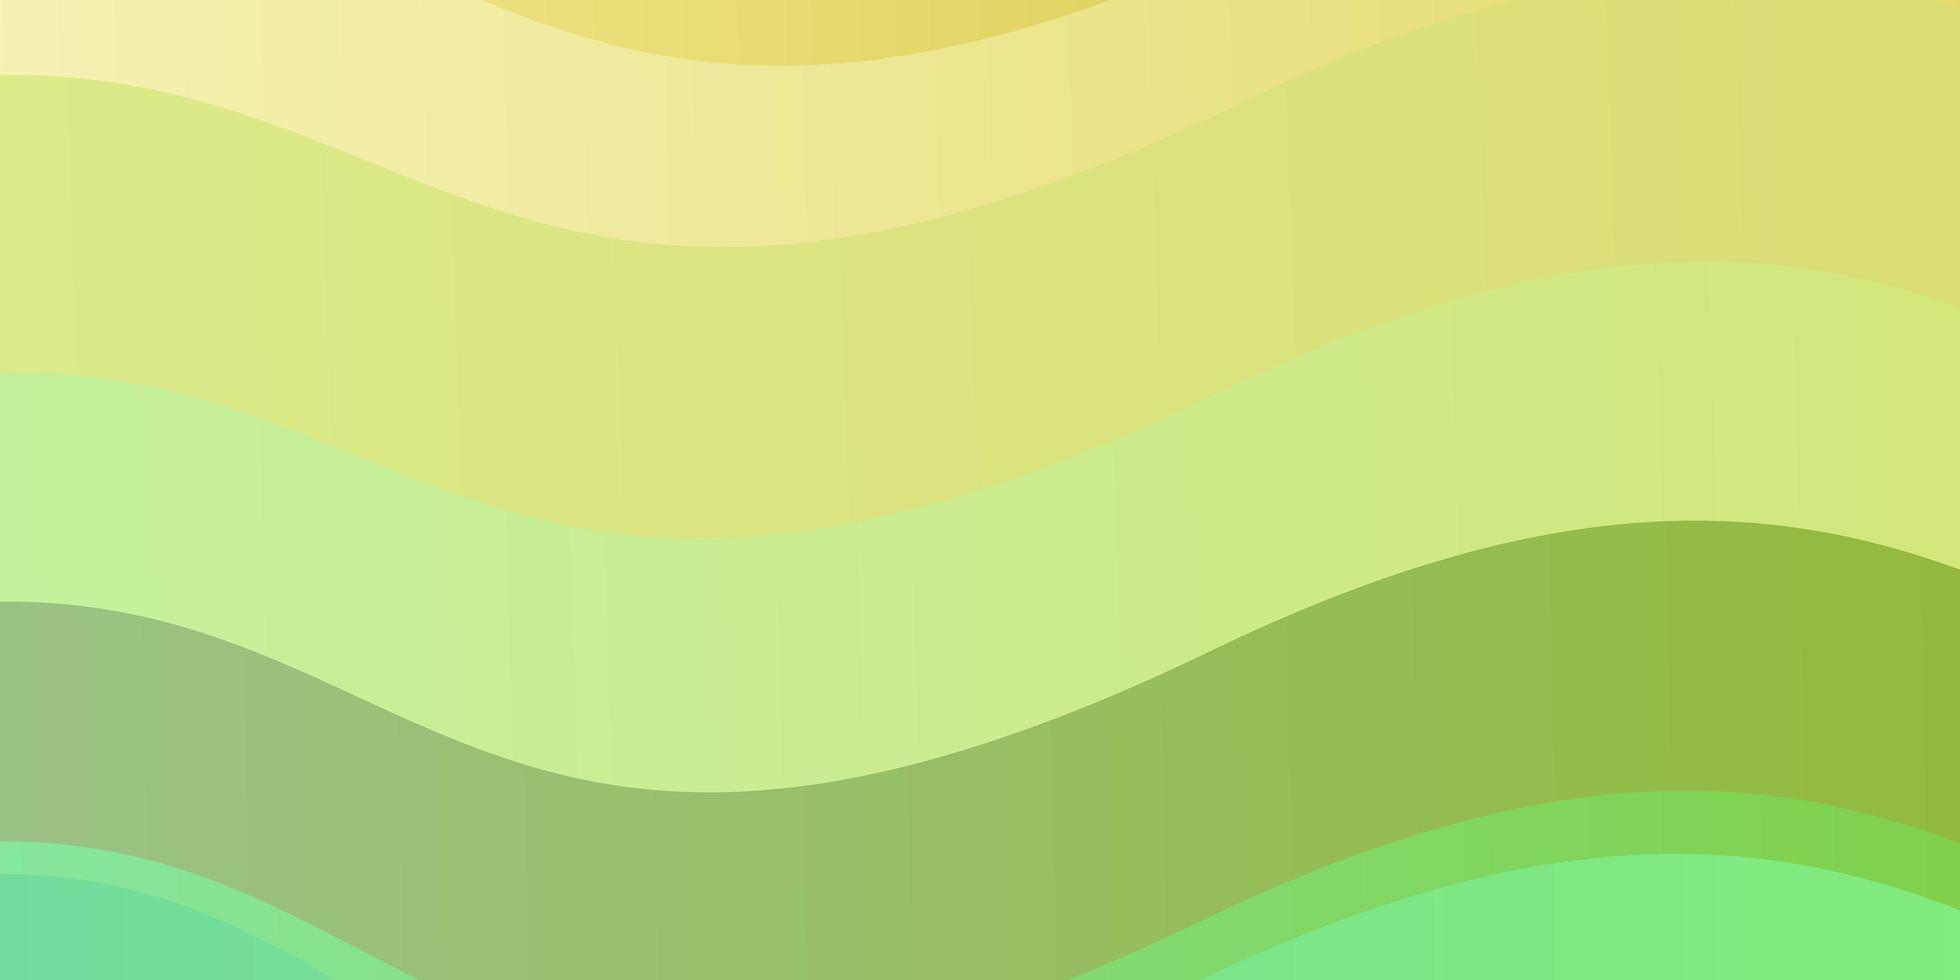 Fondo de vector verde claro, amarillo con curvas.